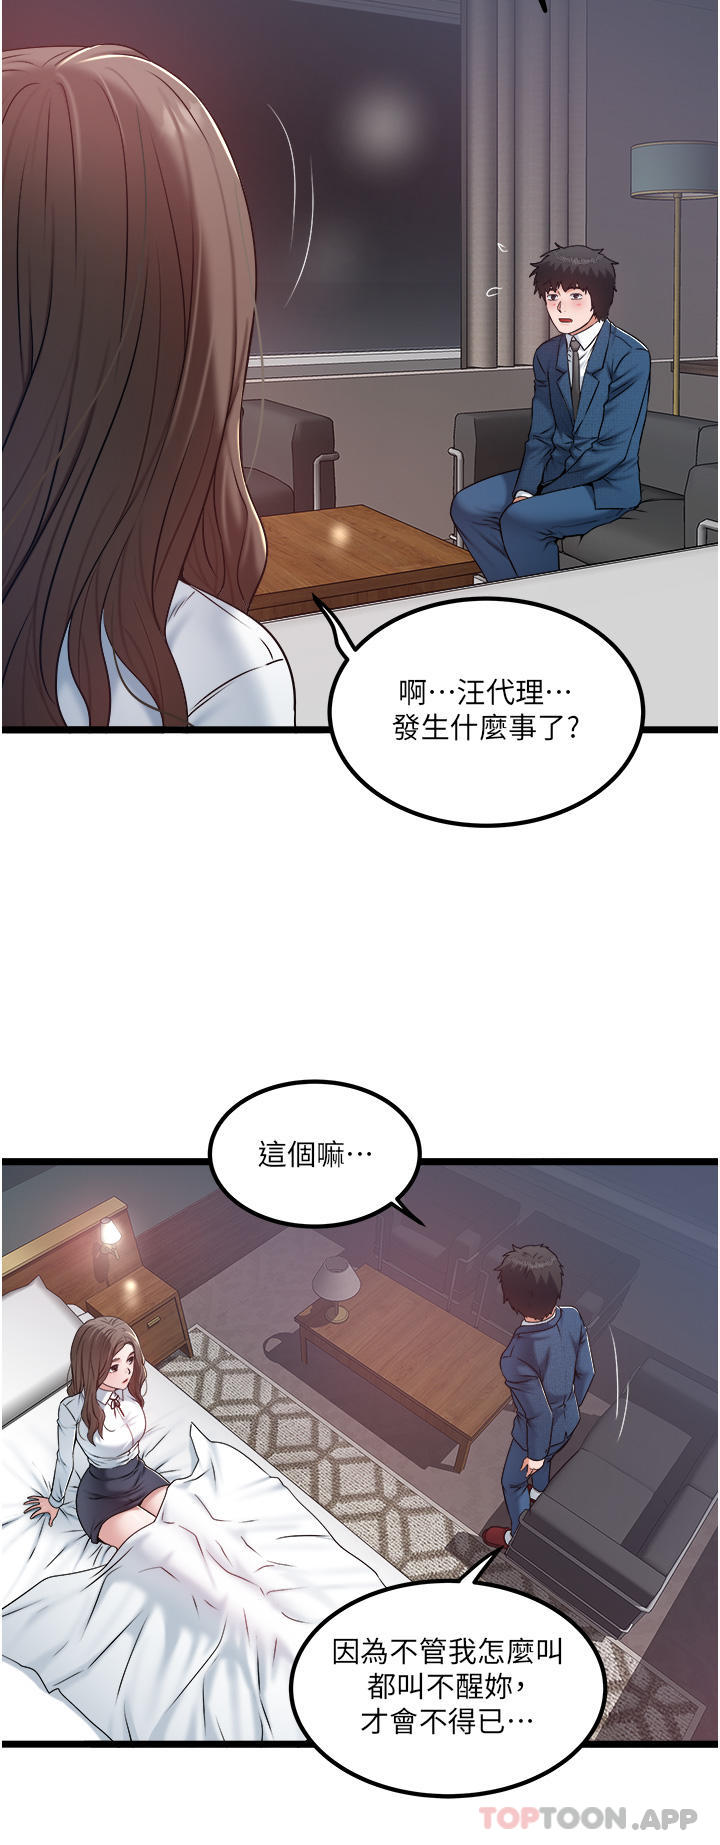 韩国污漫画 私人司機 第35话-身体性向测试 2